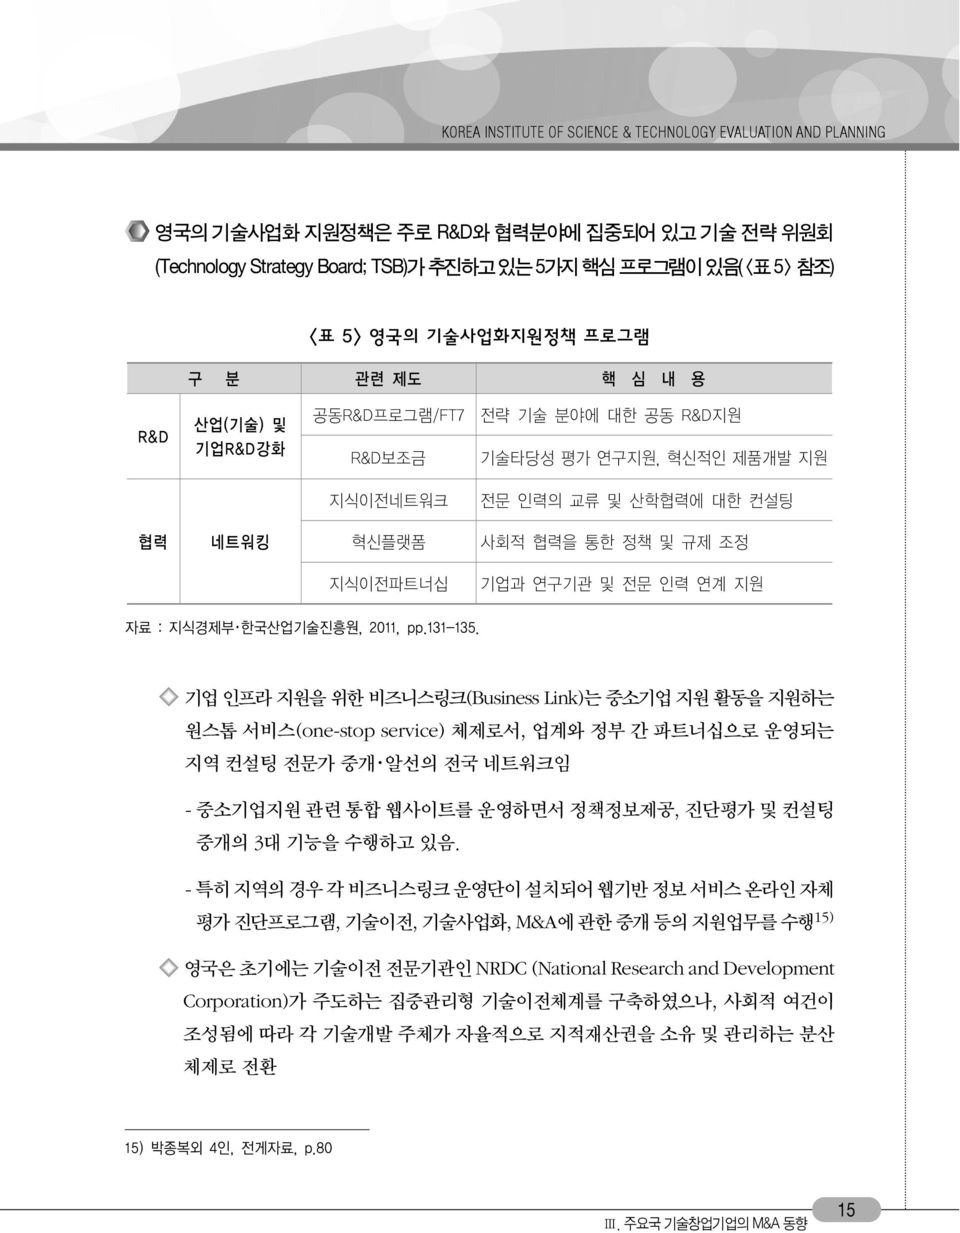 연구기관 및 전문 인력 연계 지원 자료 : 지식경제부 한국산업기술진흥원, 2011, pp.131-135.